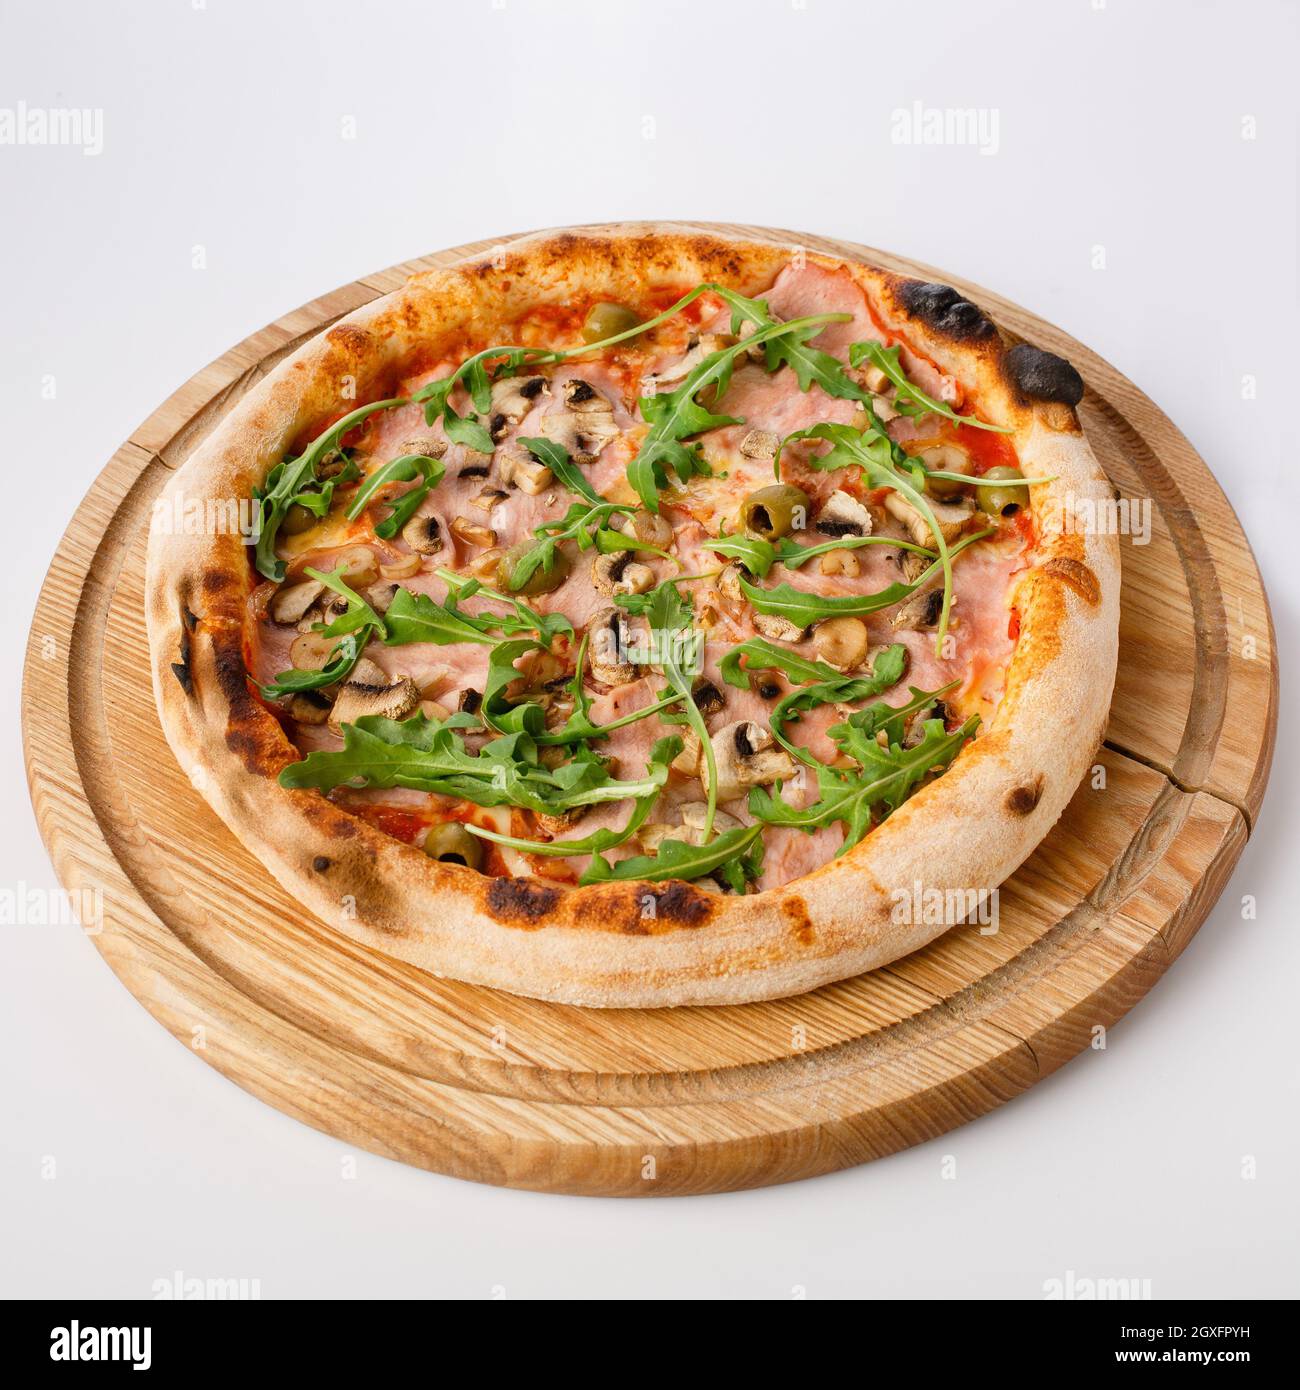 Vue de dessus de pizza chaude sur un stand en bois. Pizza Capricciosa , base de tomate. Jambon tendre, champignons, olives et arugula fraîche à base de deux chés Banque D'Images